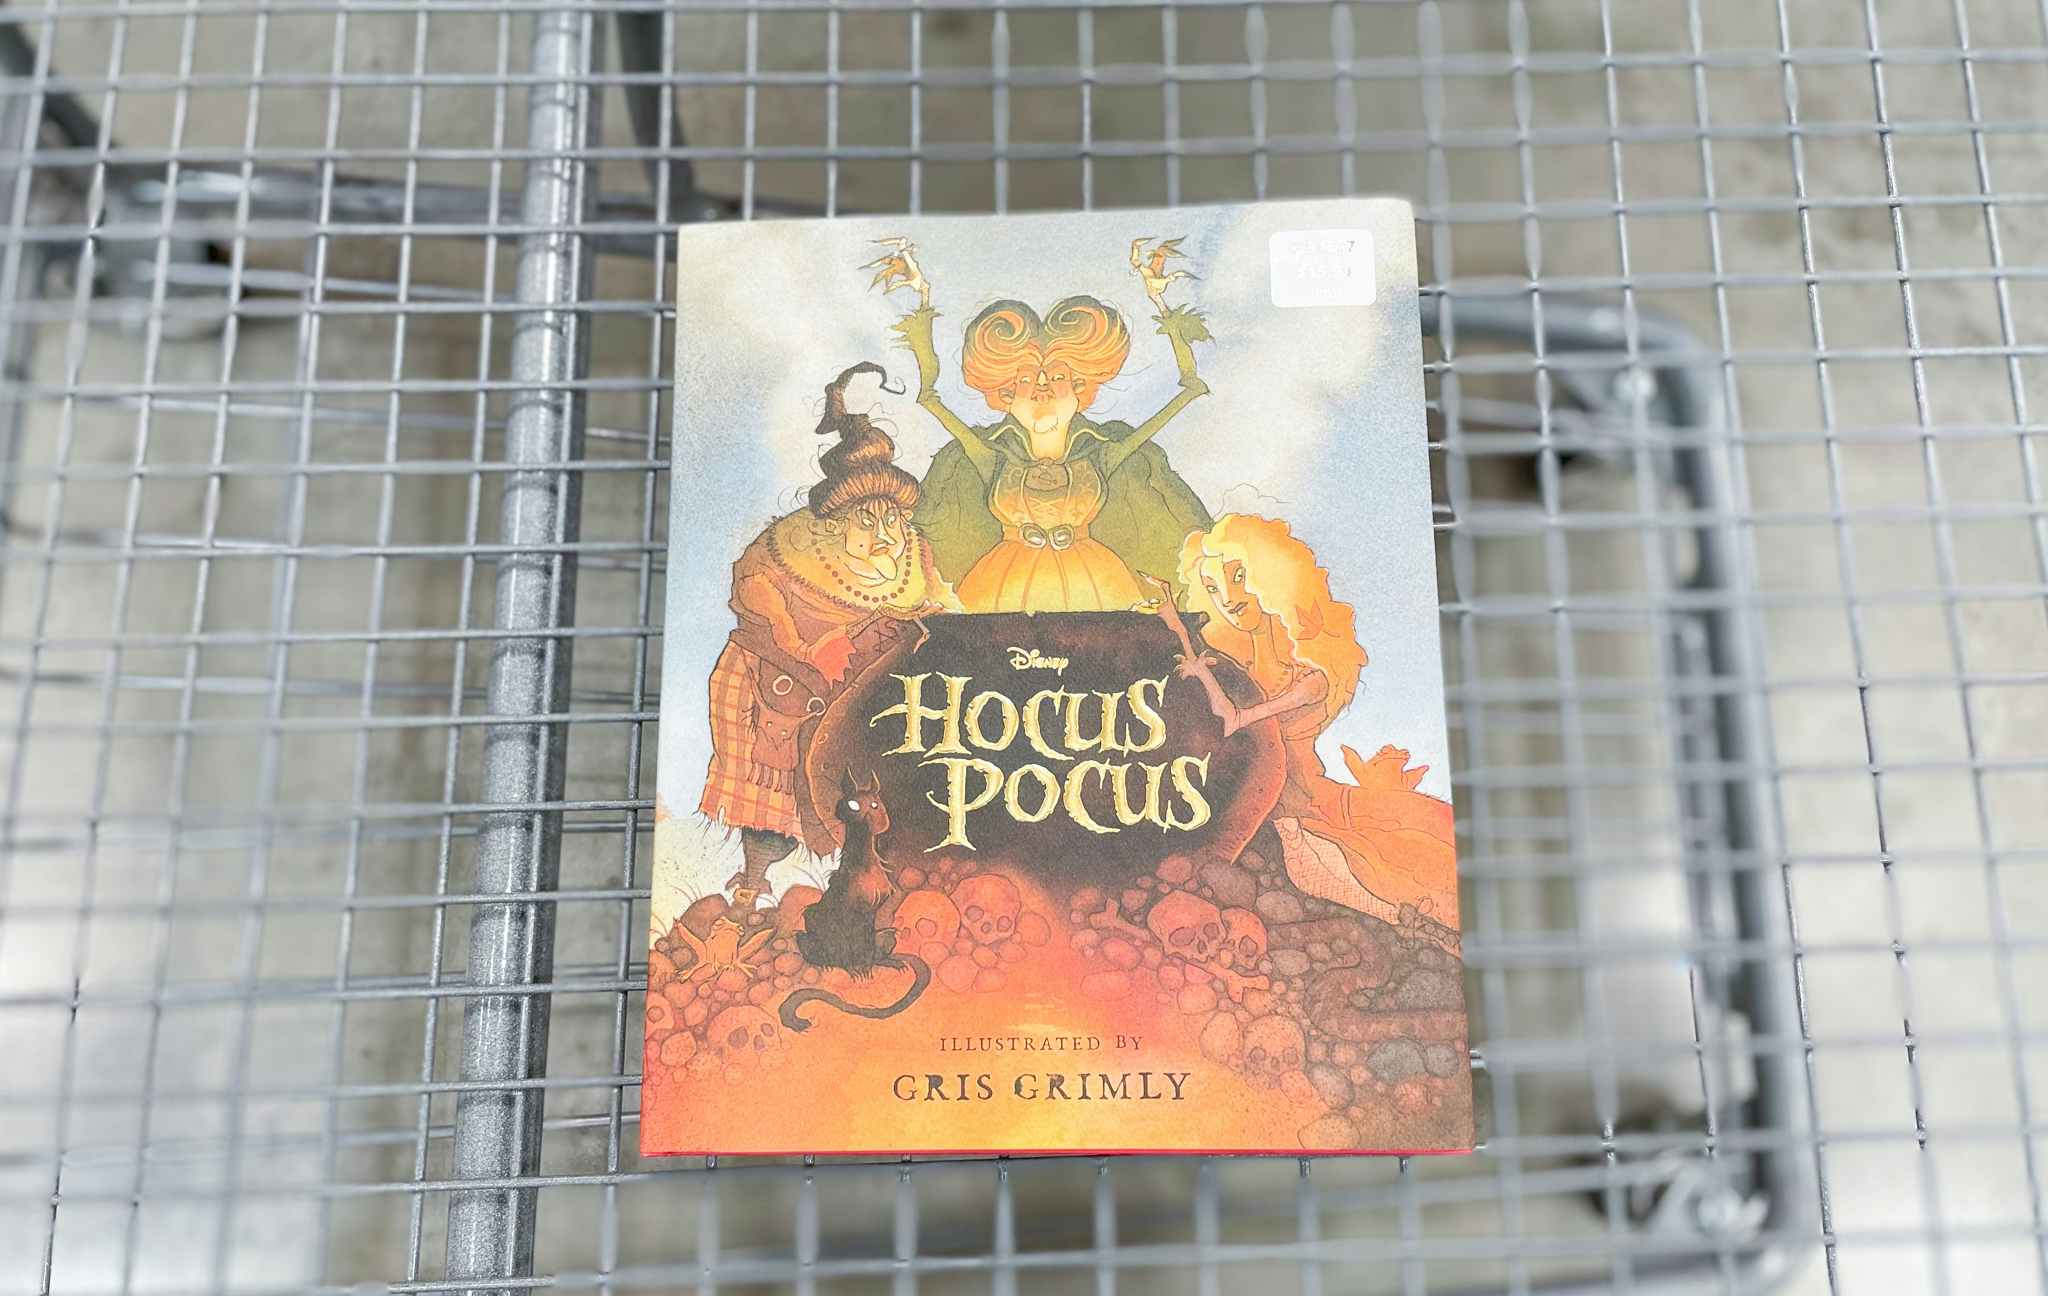 hocus pocus book in a cart at costco